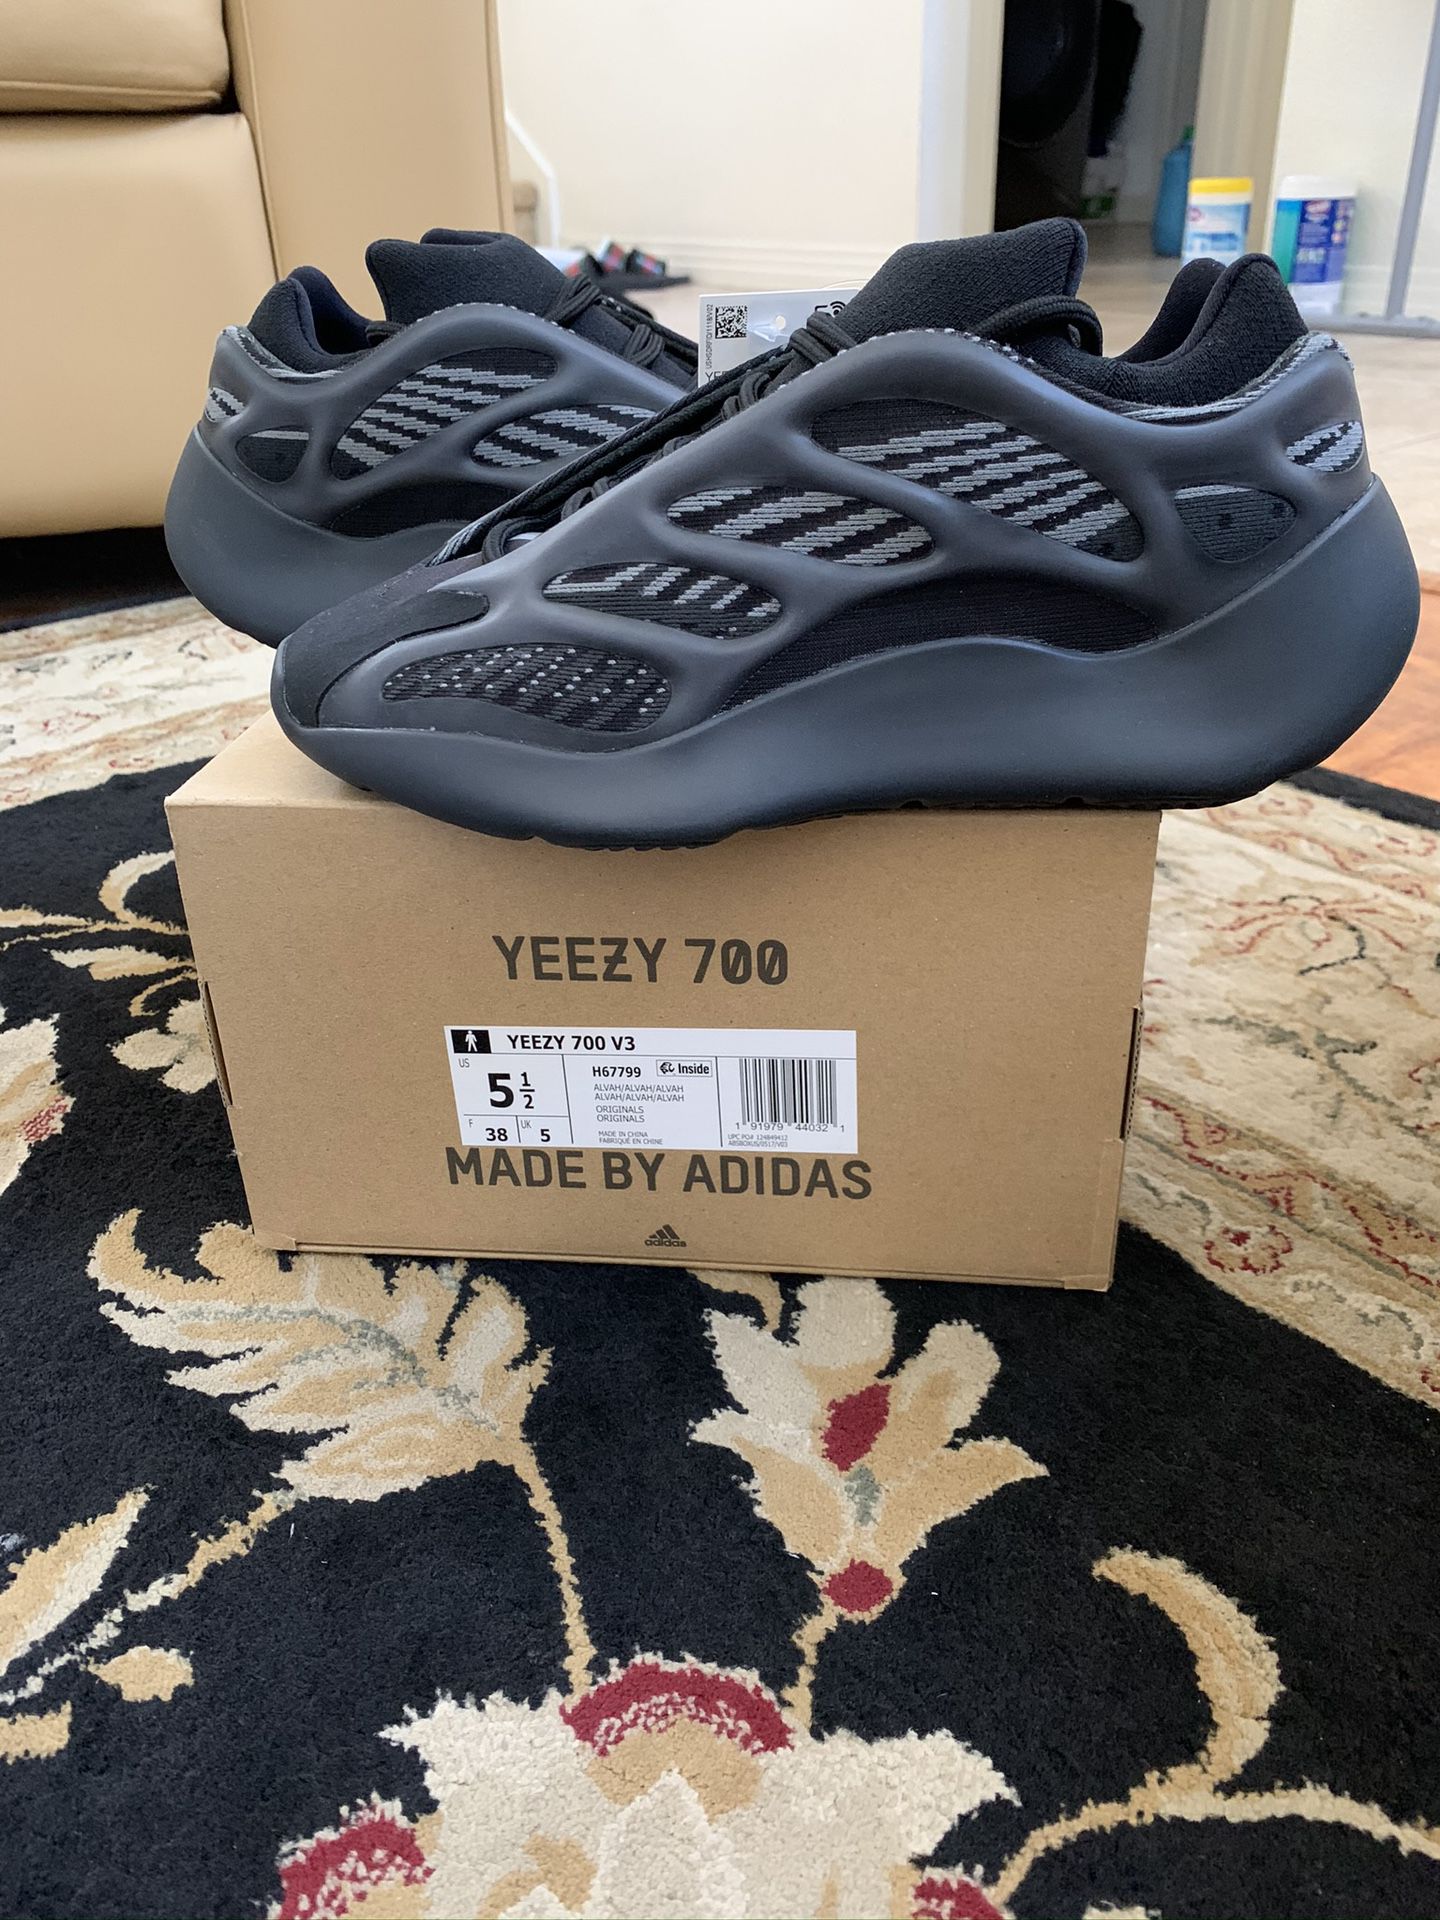 Adidas Yeezy 700 Alvah Black Size 5.5